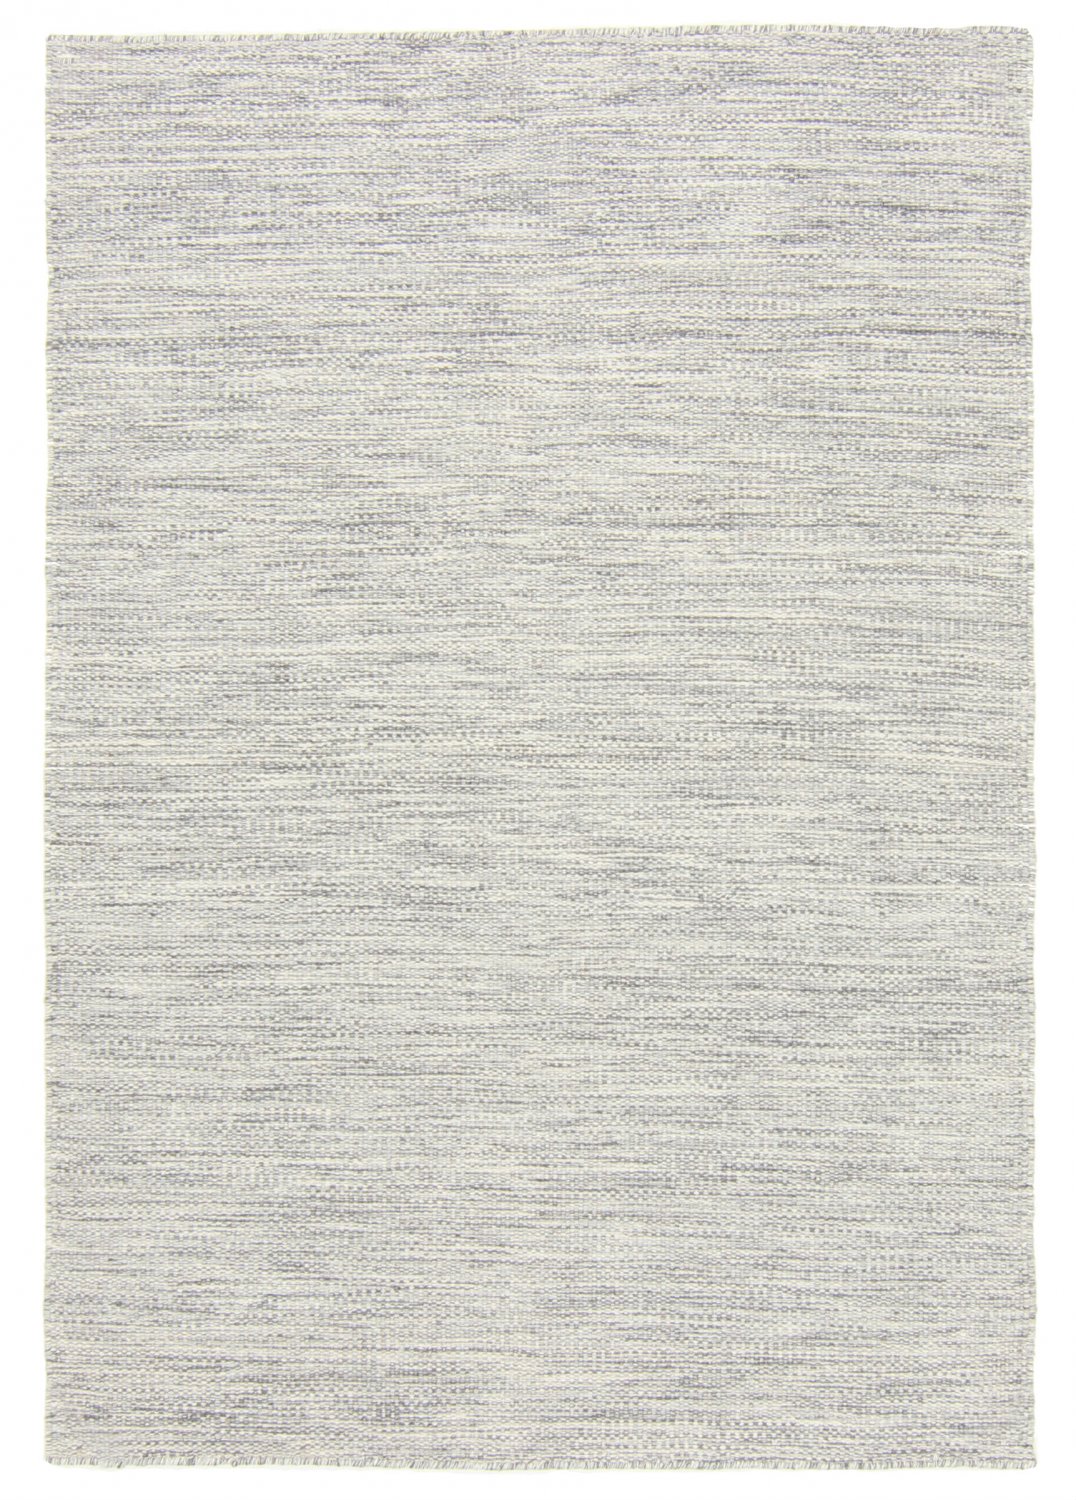 Tapis de laine - Dhurry (gris)